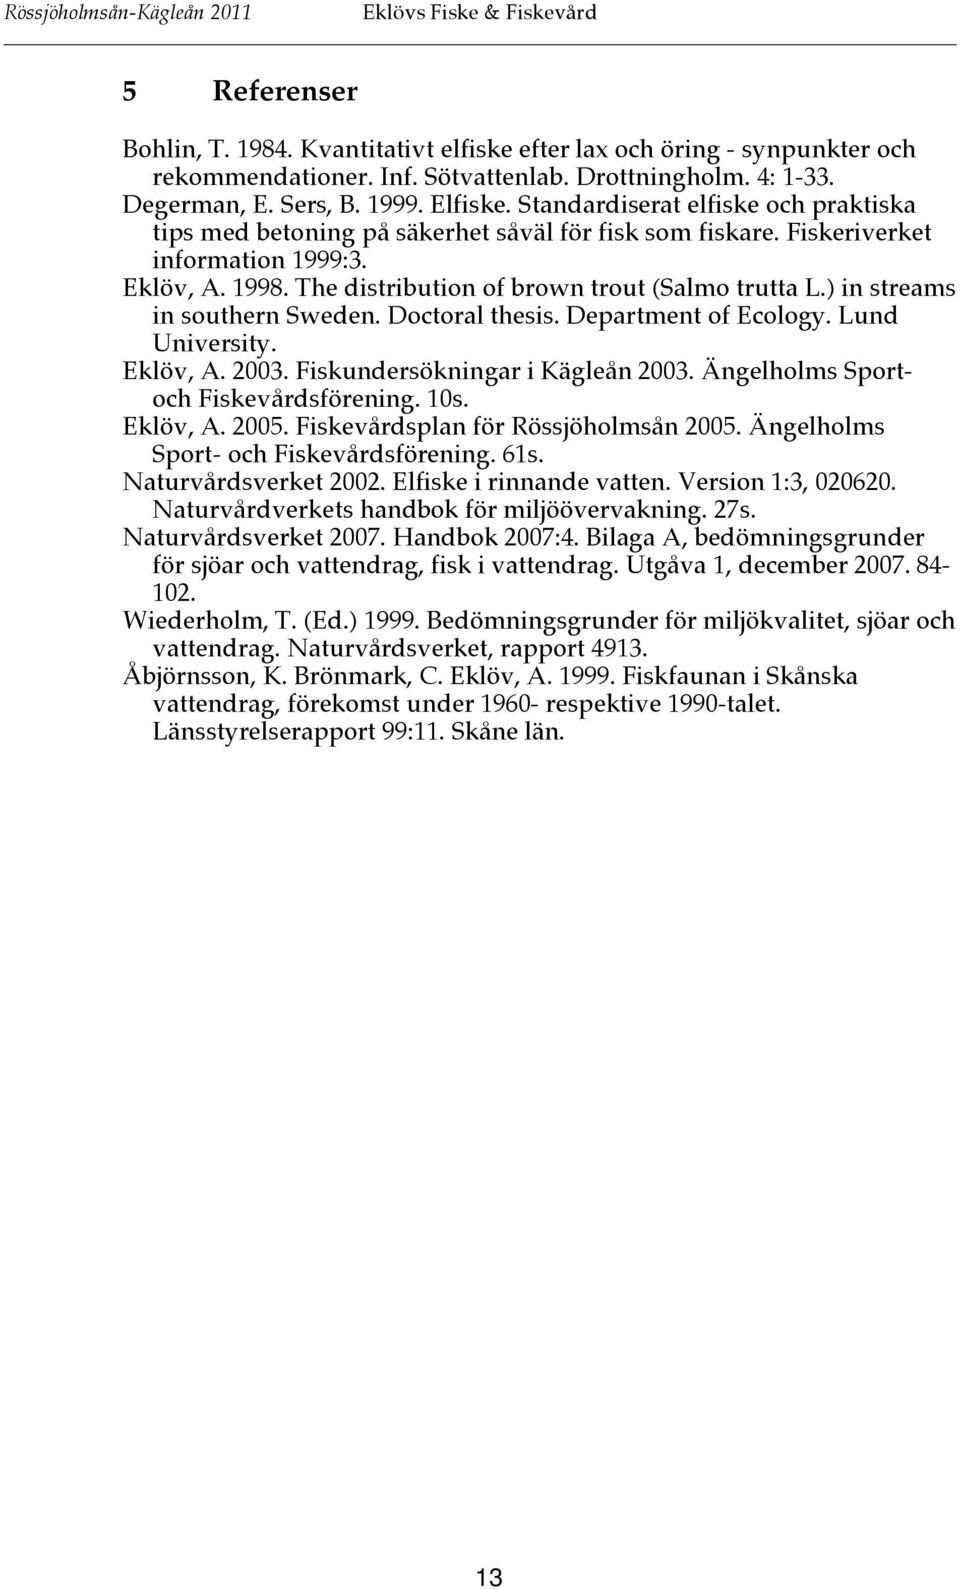 ) in streams in southern Sweden. Doctoral thesis. Department of Ecology. Lund University. Eklöv, A. 2003. Fiskundersökningar i Kägleån 2003. Ängelholms Sportoch Fiskevårdsförening. 10s. Eklöv, A. 2005.